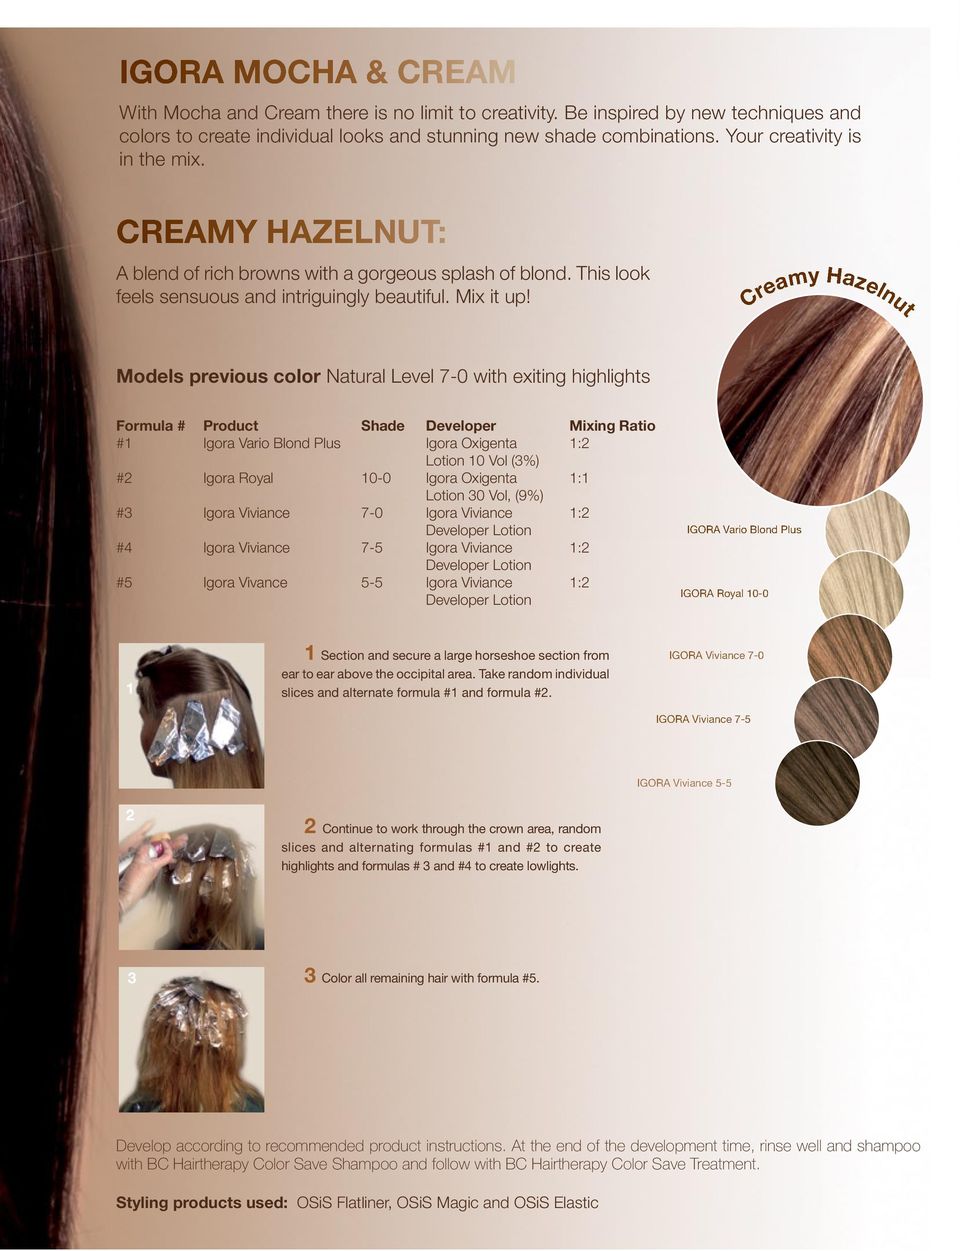 Creamy Hazelnut Models previous color Natural Level 7-0 with exiting highlights Formula # Product Shade Developer Mixing Ratio #1 Igora Vario Blond Plus Igora Oxigenta 1:2 Lotion 10 Vol (3%) #2 Igora